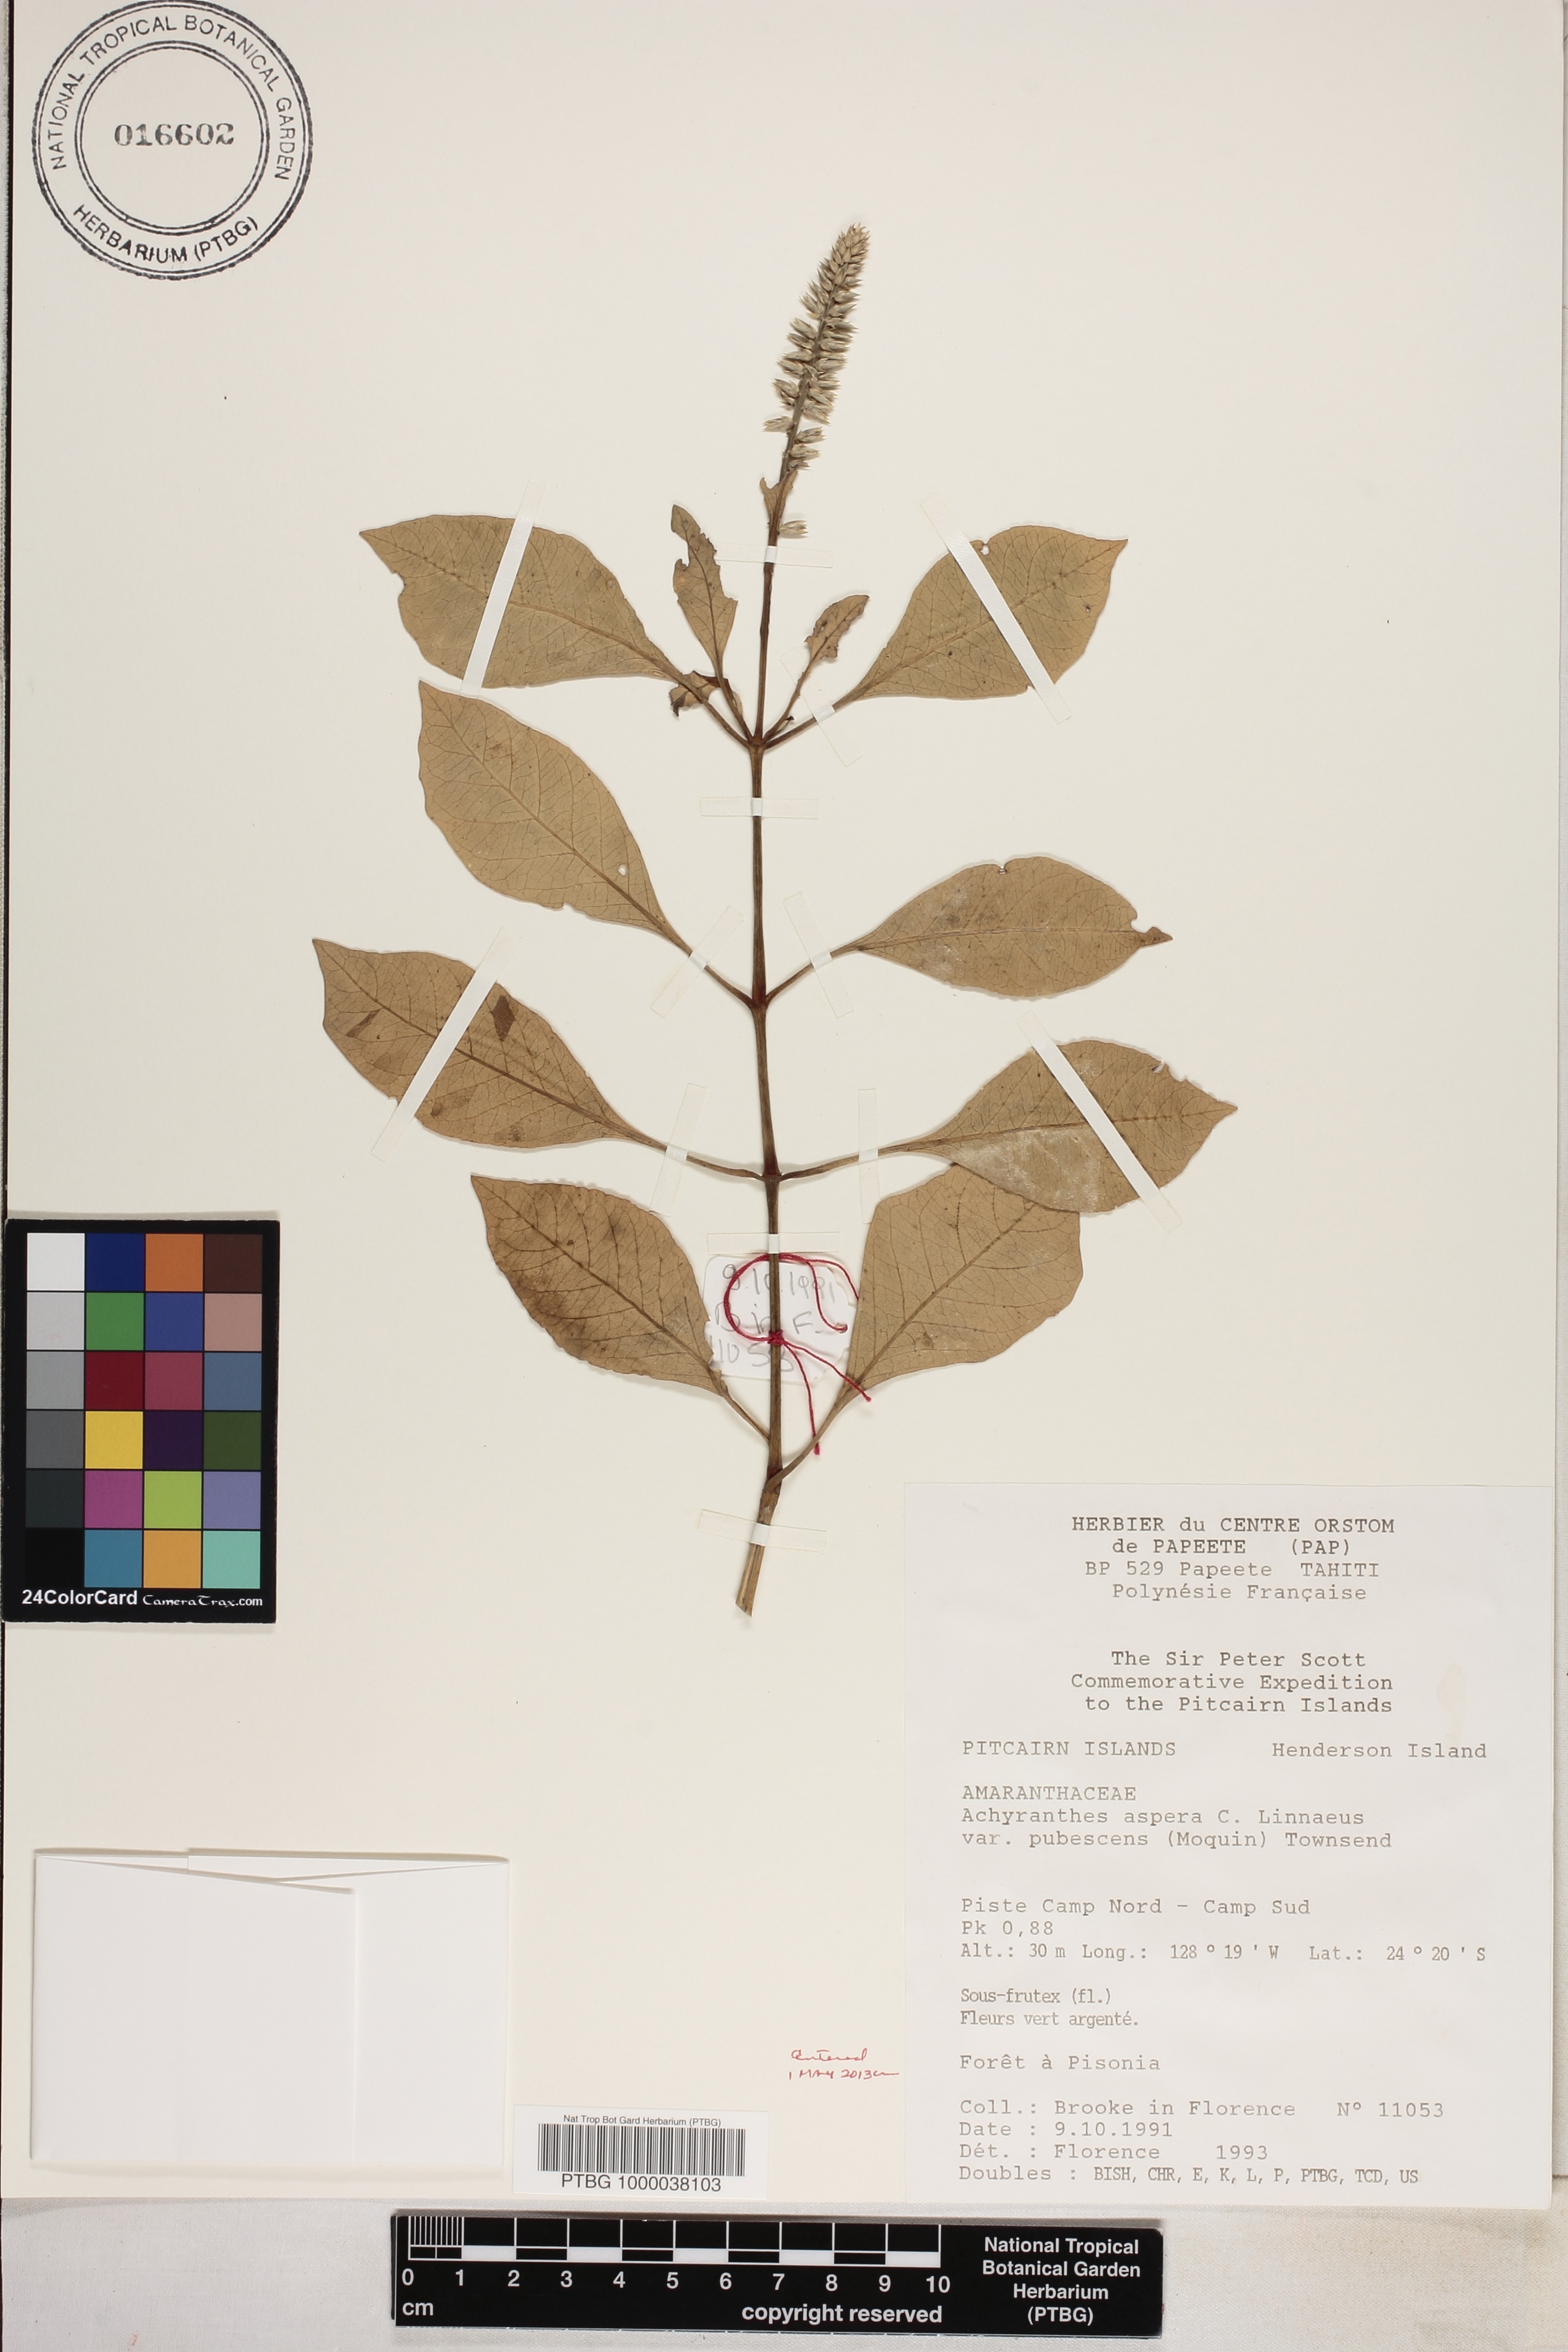 Achyranthes aspera var. pubescens image